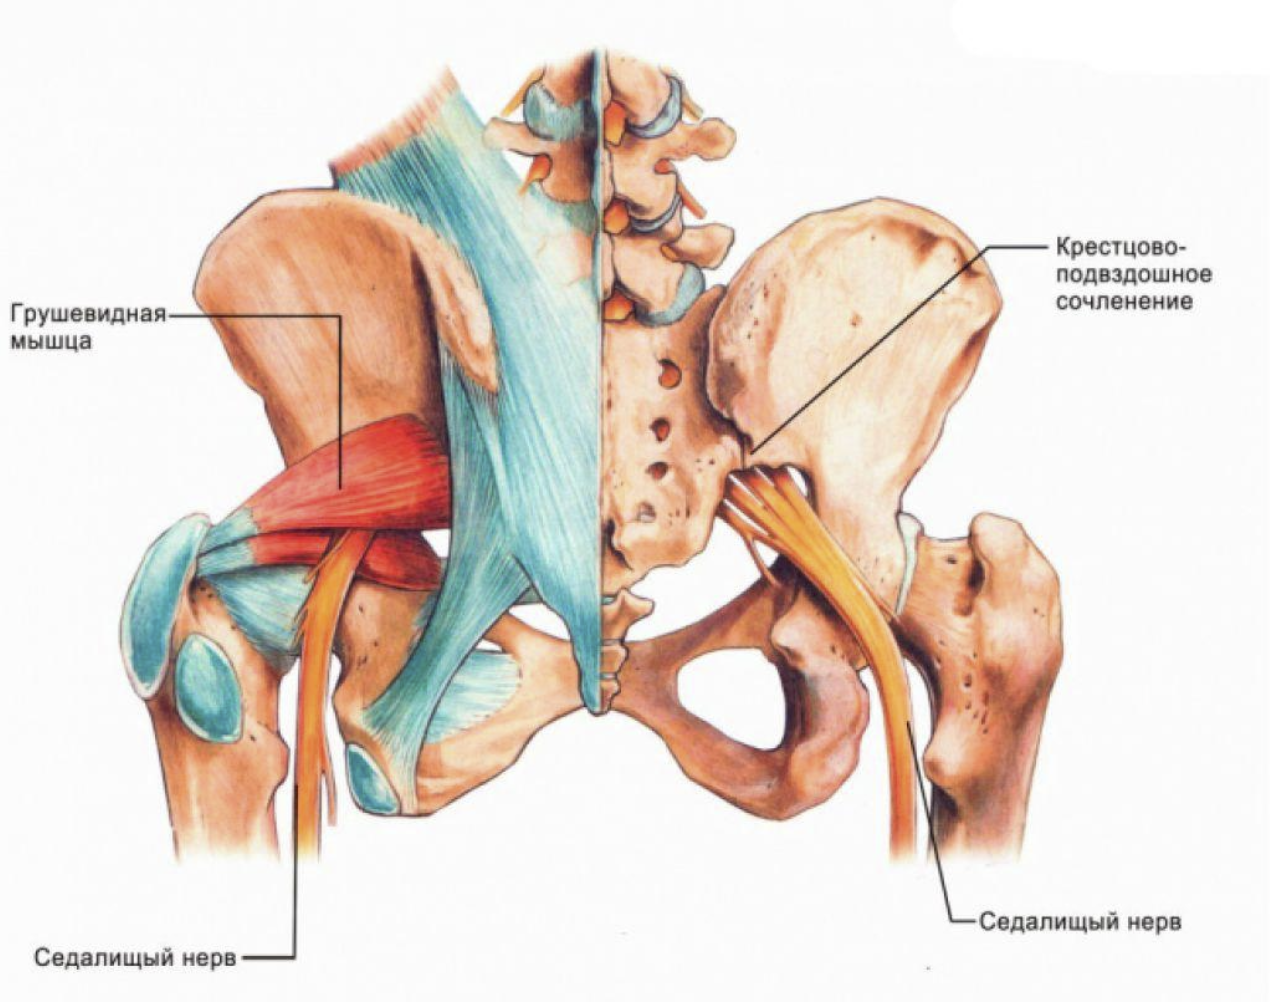 Разрыв крестцов. Строение мышц таза седалищный нерв. Строение тазобедренного сустава с мышцами и связками. Тазобедренный сустав анатомия грушевидная мышца.